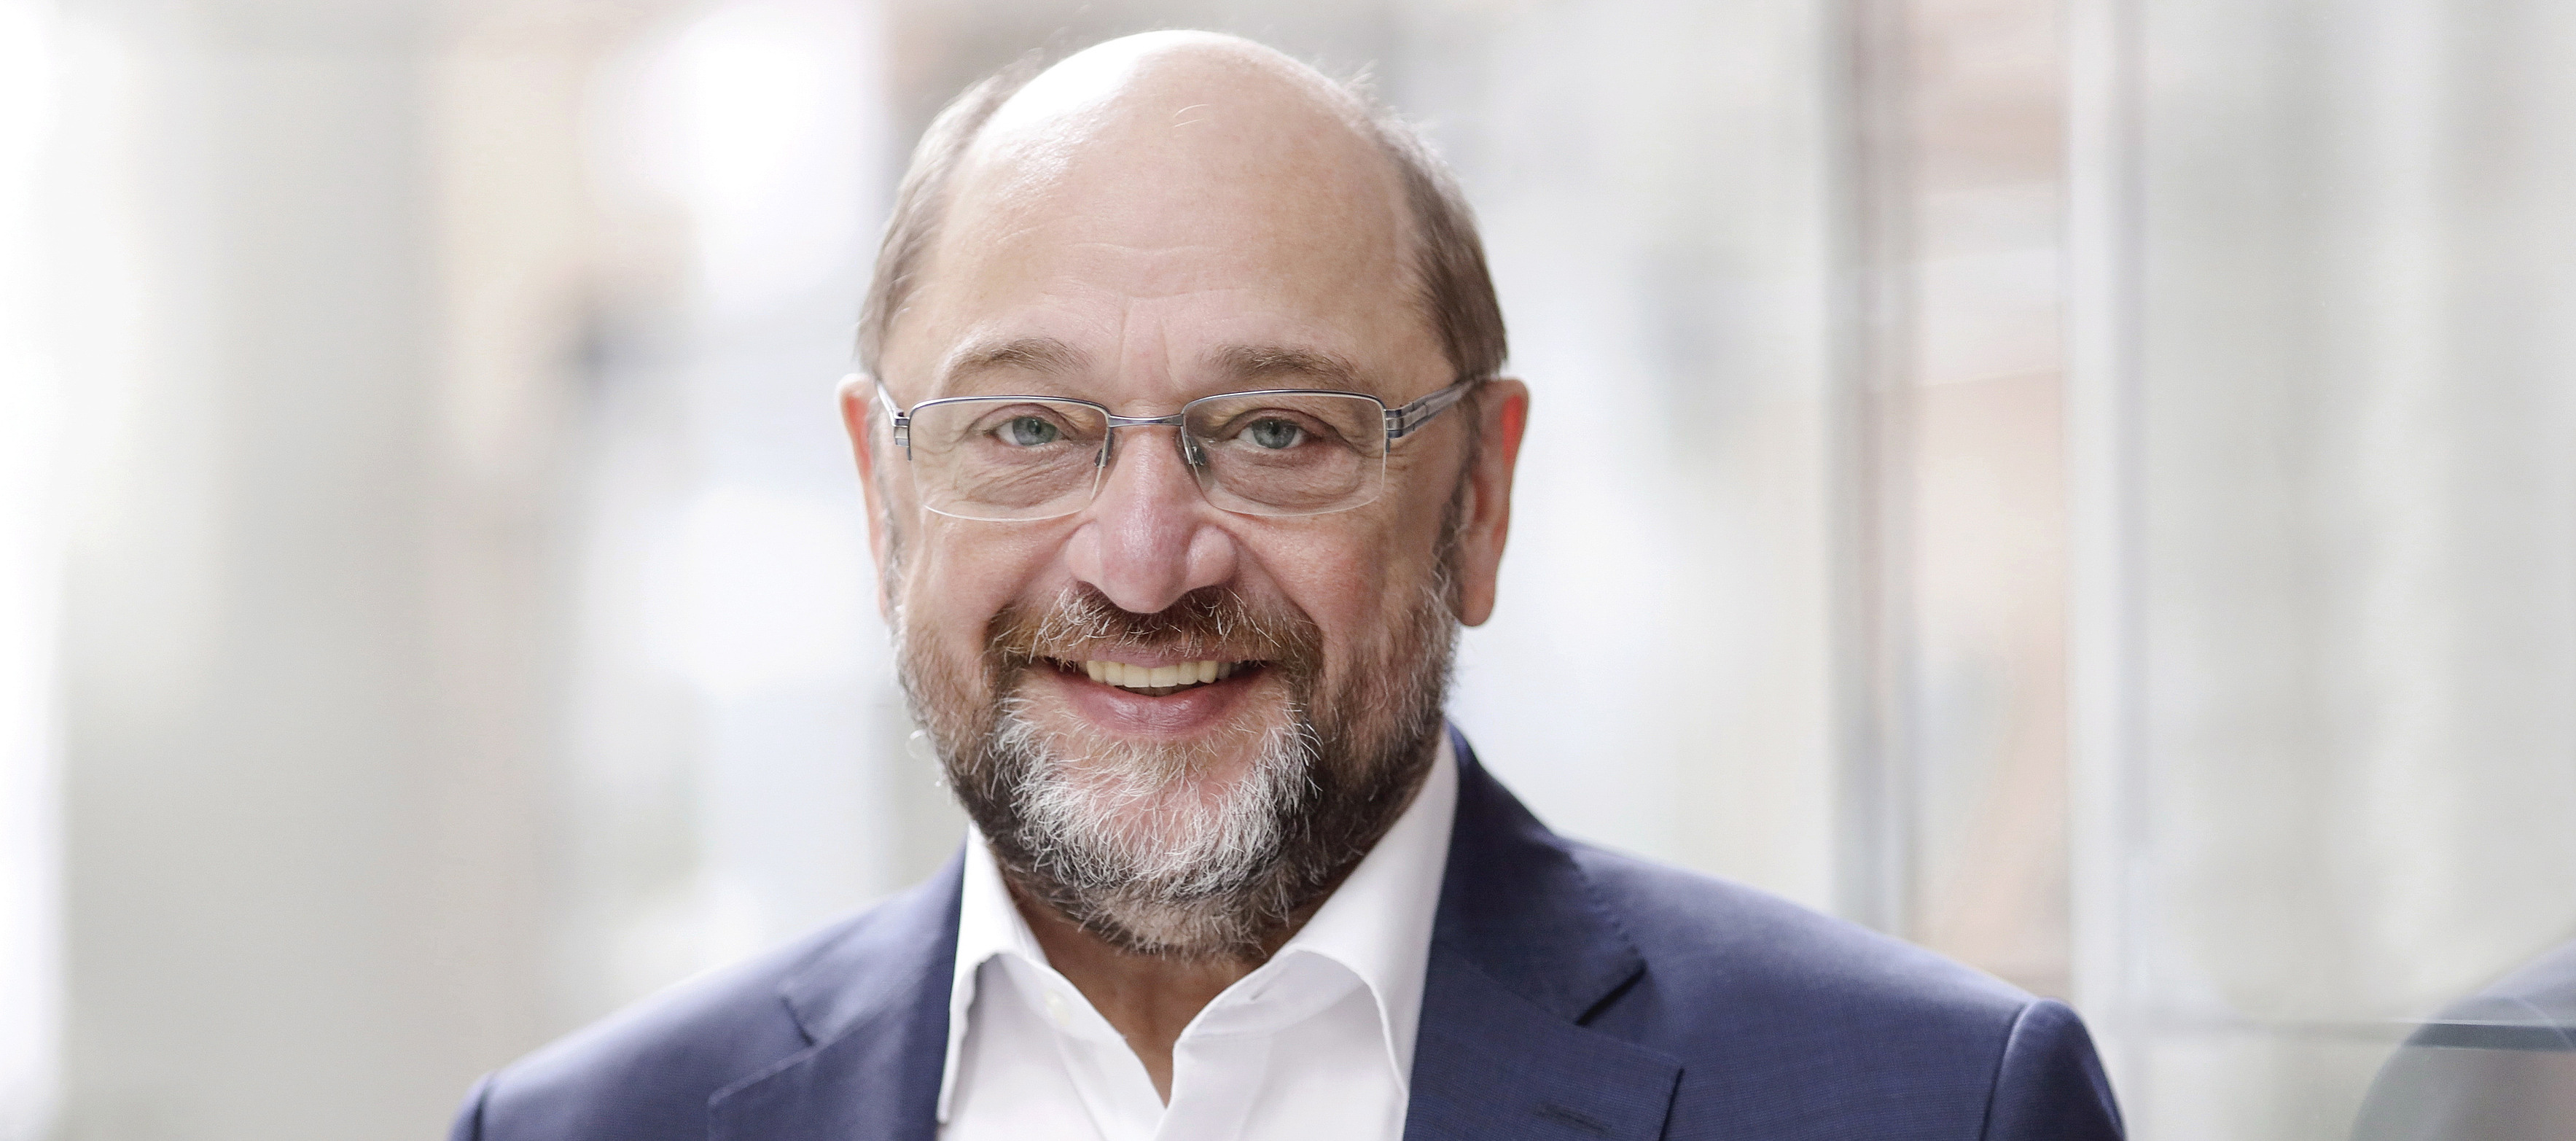 Portrait von Martin Schulz